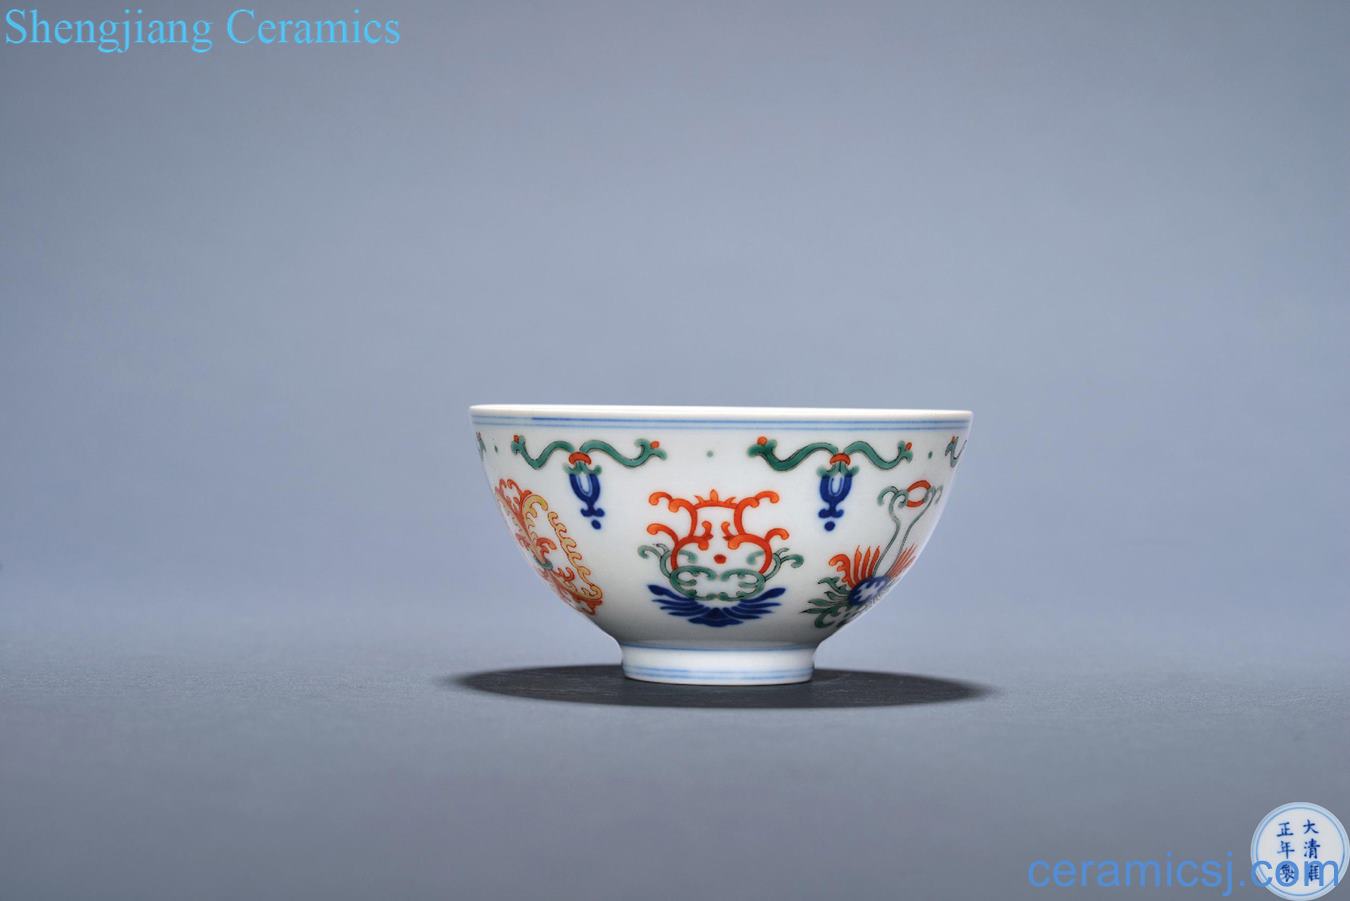 Qing yongzheng bucket color honeysuckle grain heart bowls